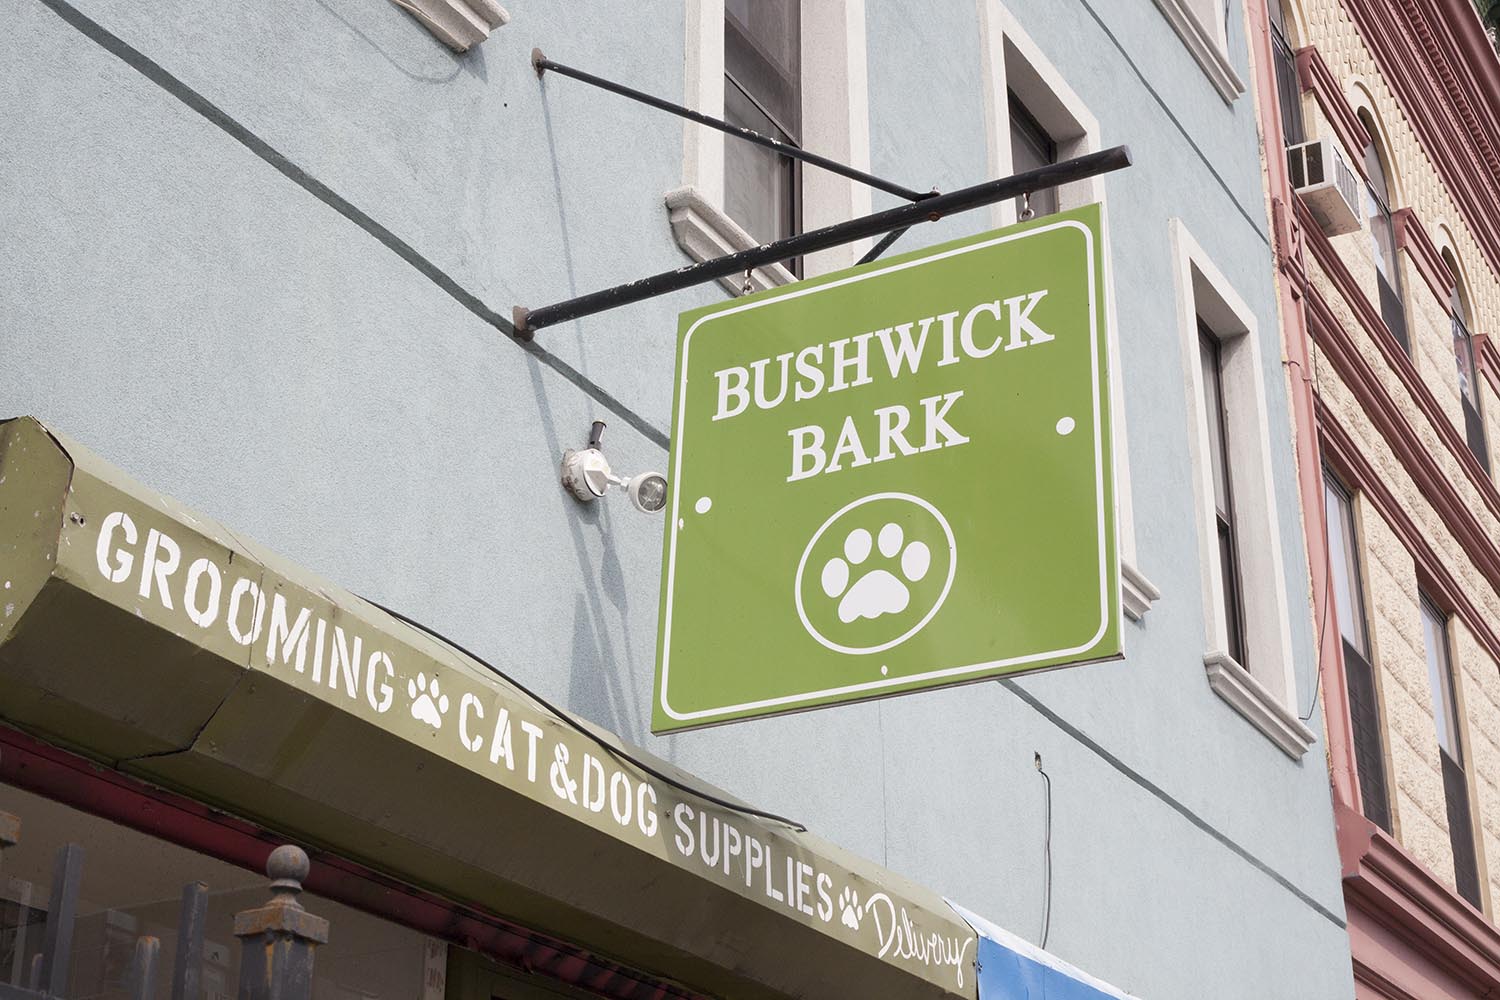 Bushwick Bark on Irving